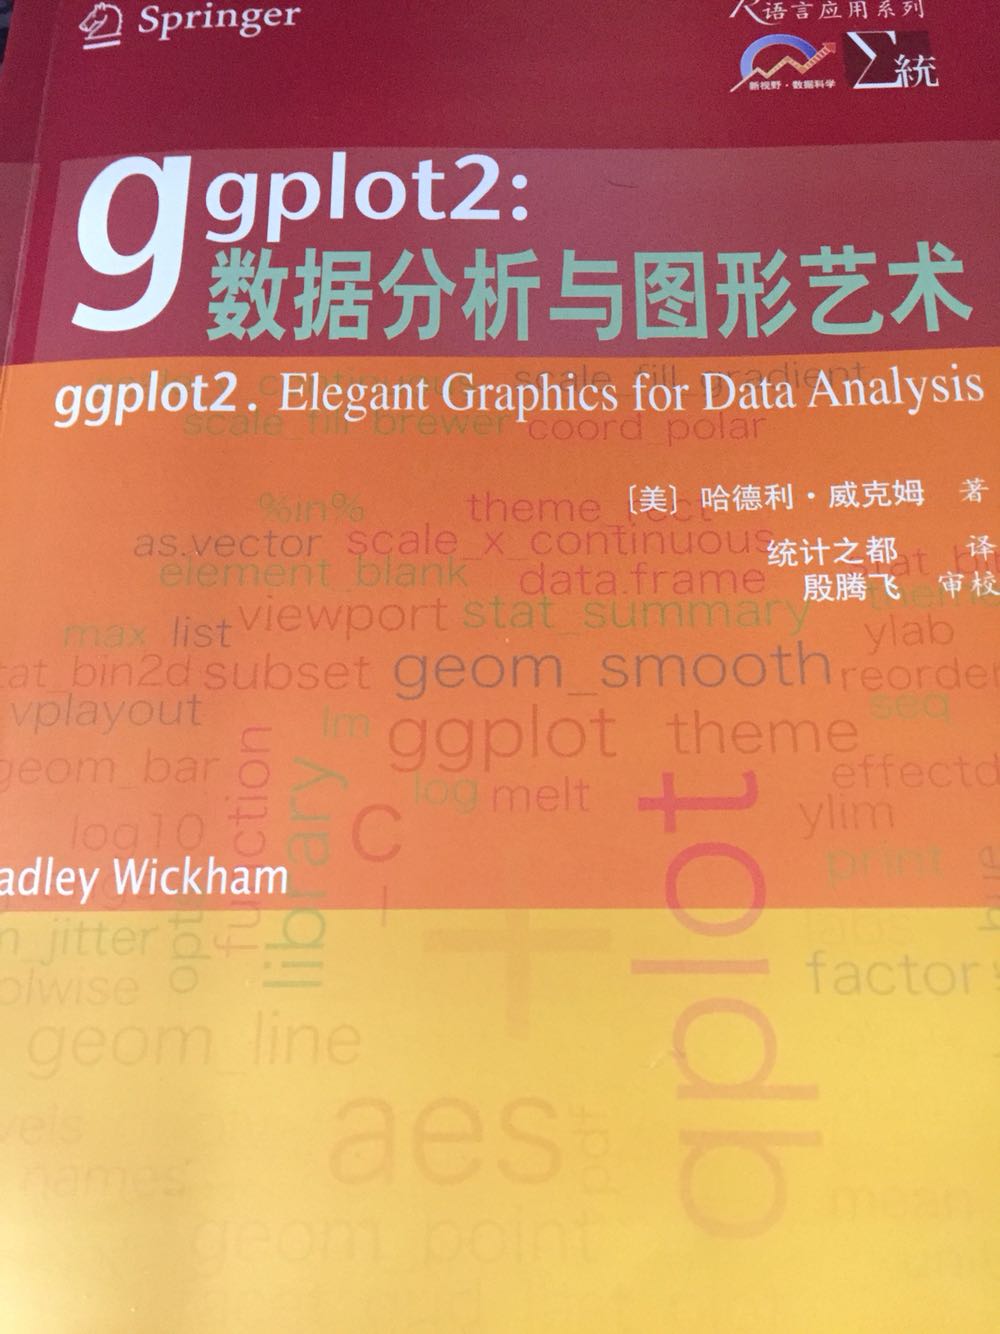 很不错的一本书，ggplot2包绘图功能很强大，不过书里写的有点啰嗦了，有过R绘图基础的可以很快就能上手！